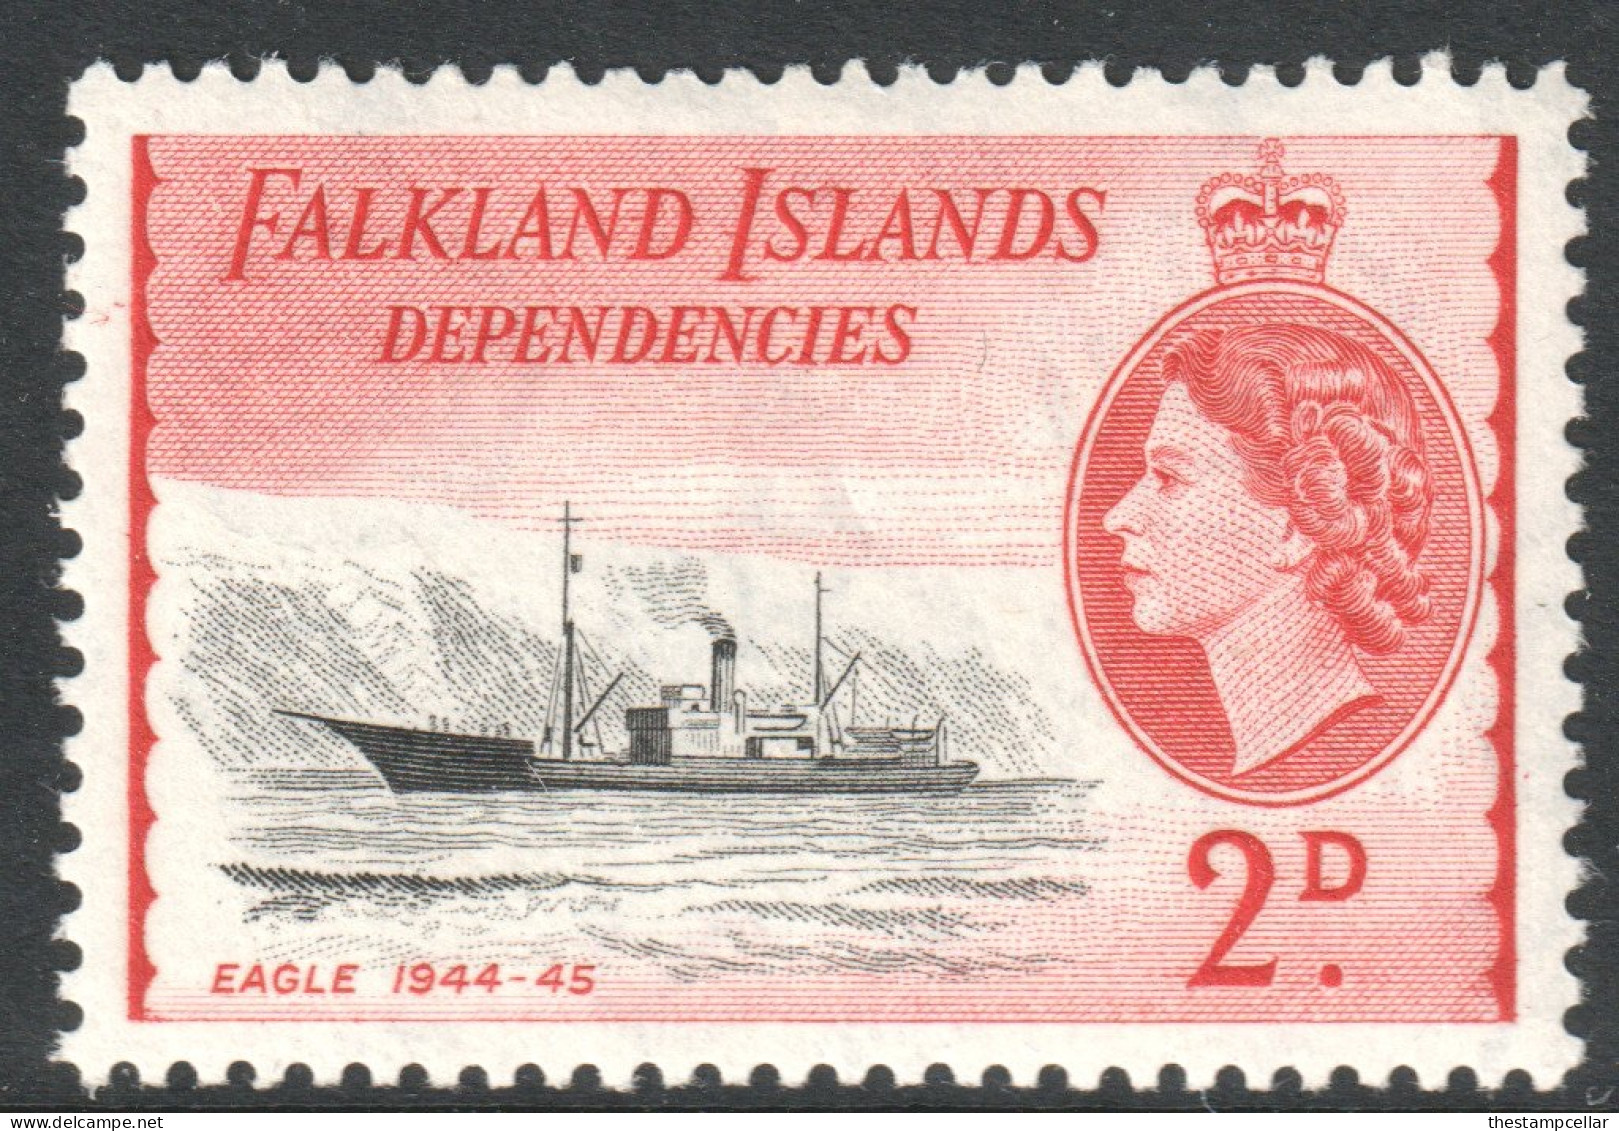 Falkland Islands Dependencies Scott 1L22 - SG G29, 1954 Elizabeth II 2d MH* - Falkland